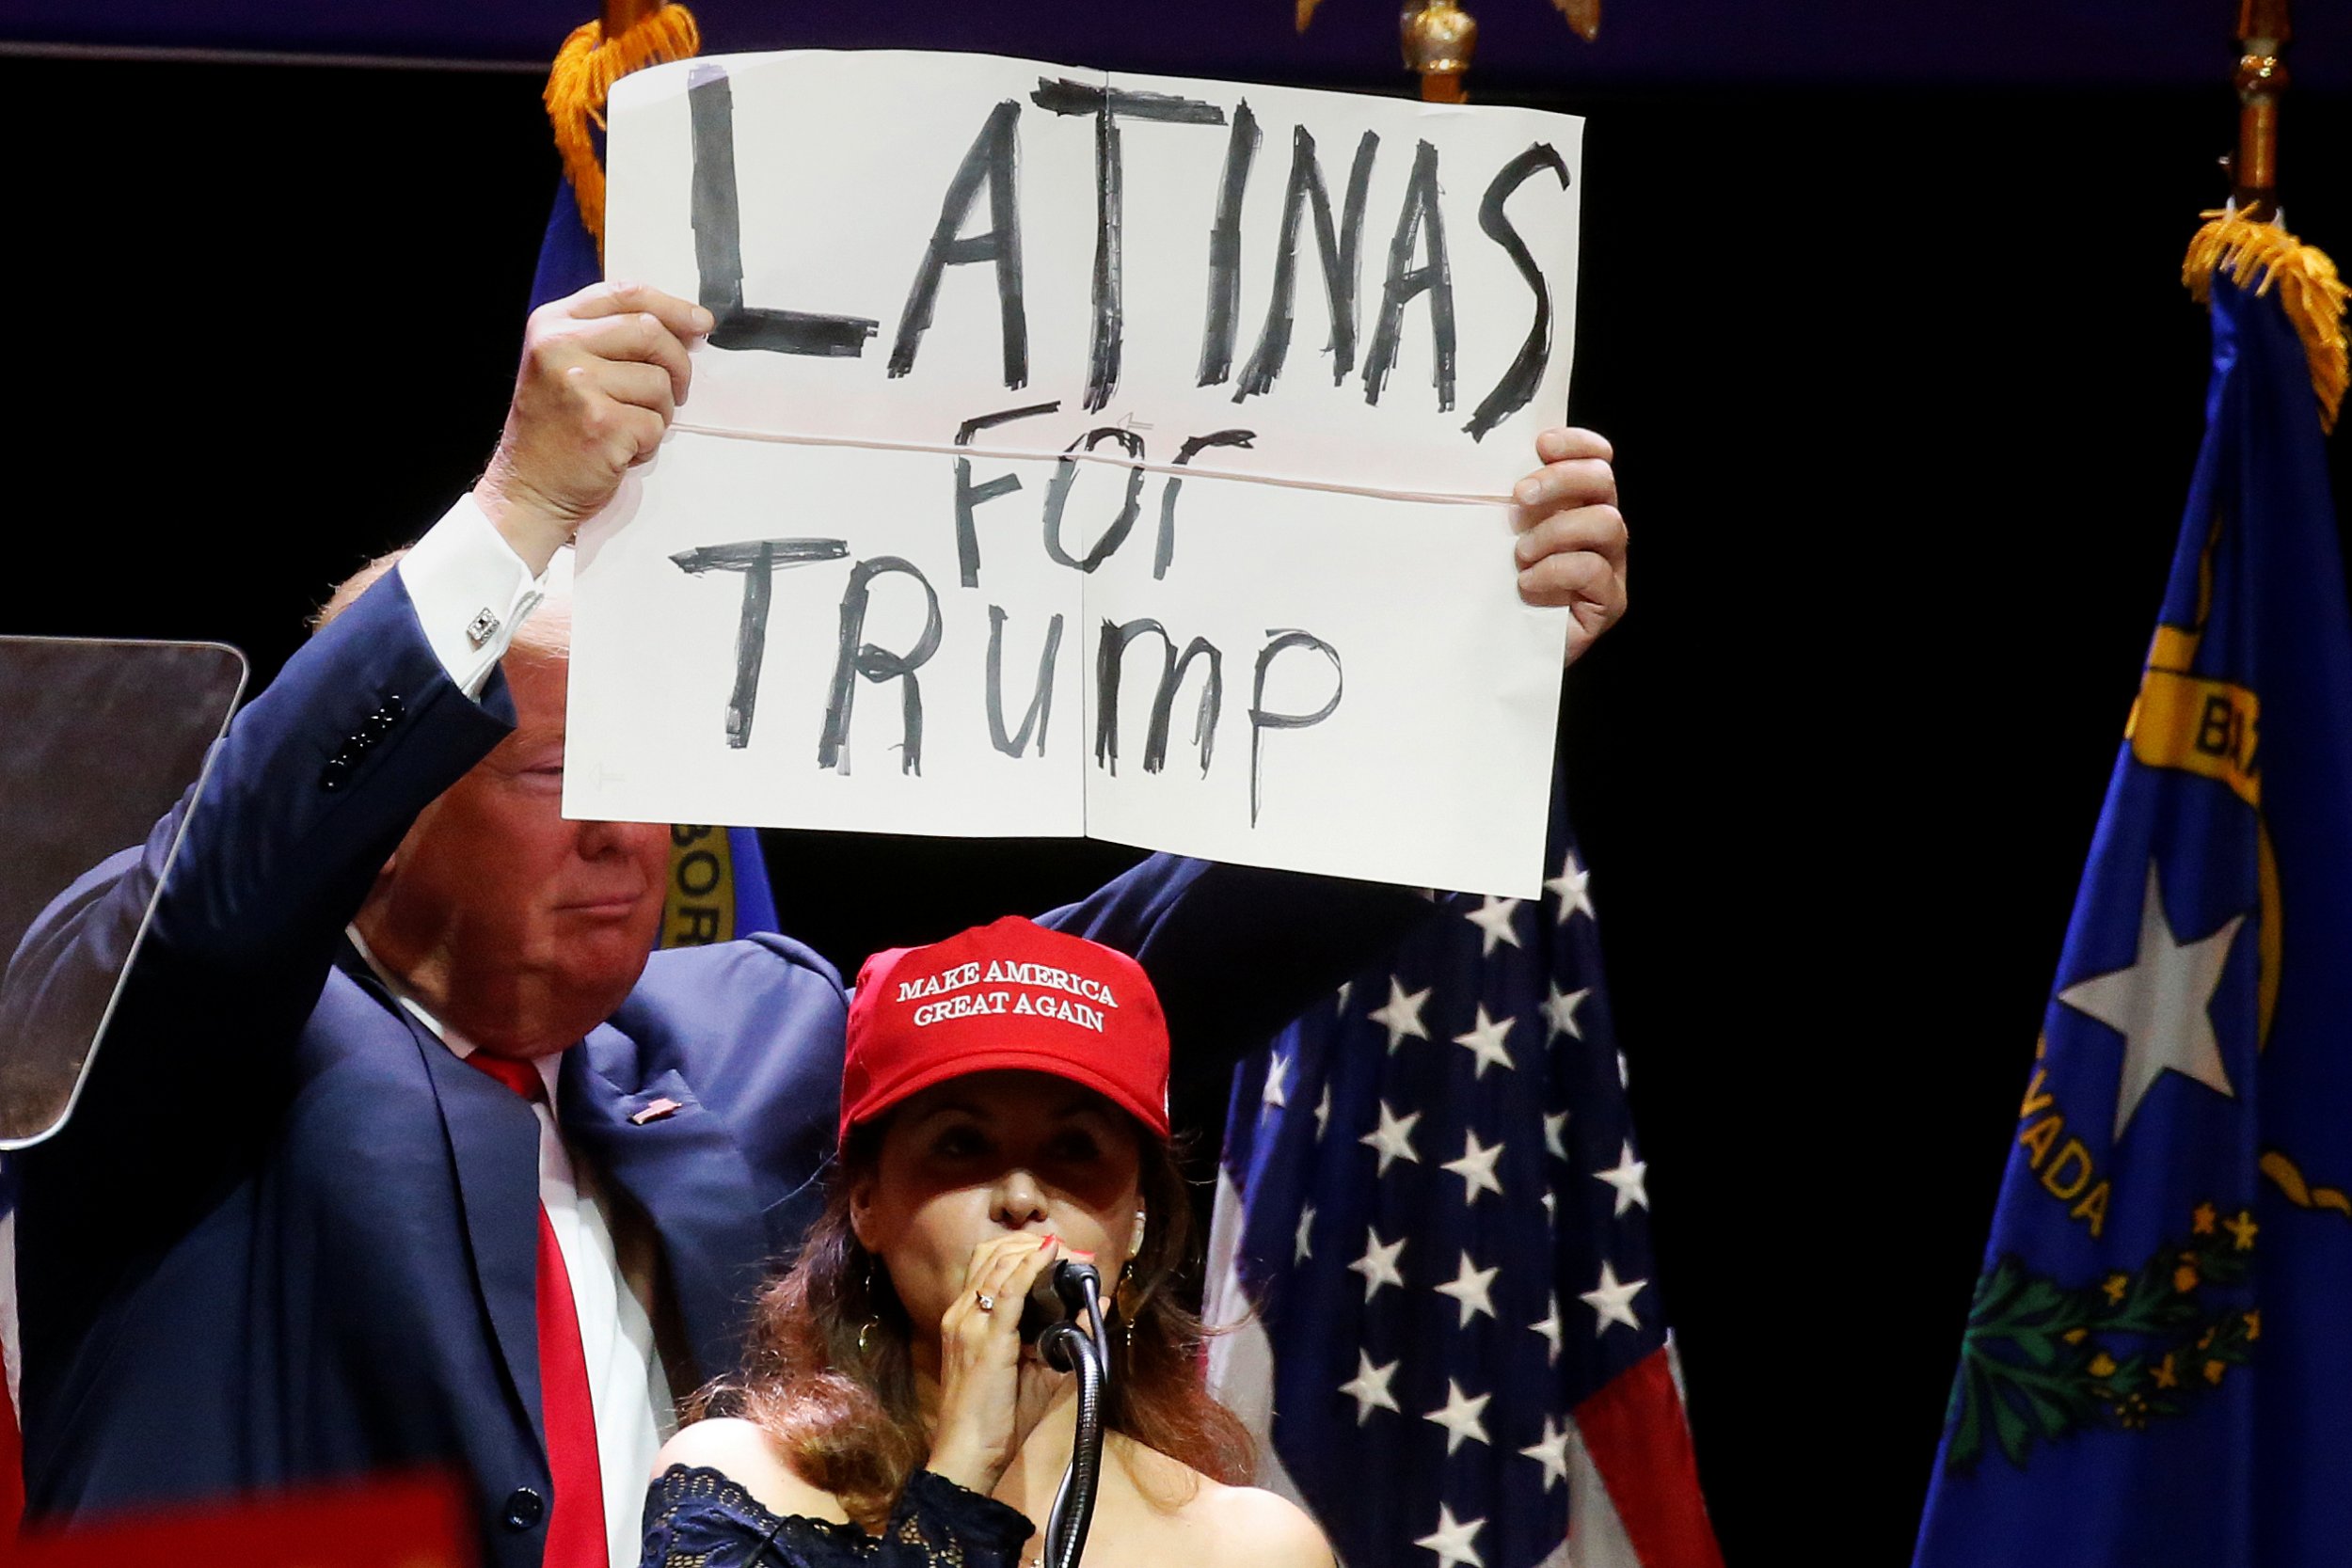 États-Unis : J'aime les Hispaniques !, déclare Trump en mangeant un taco